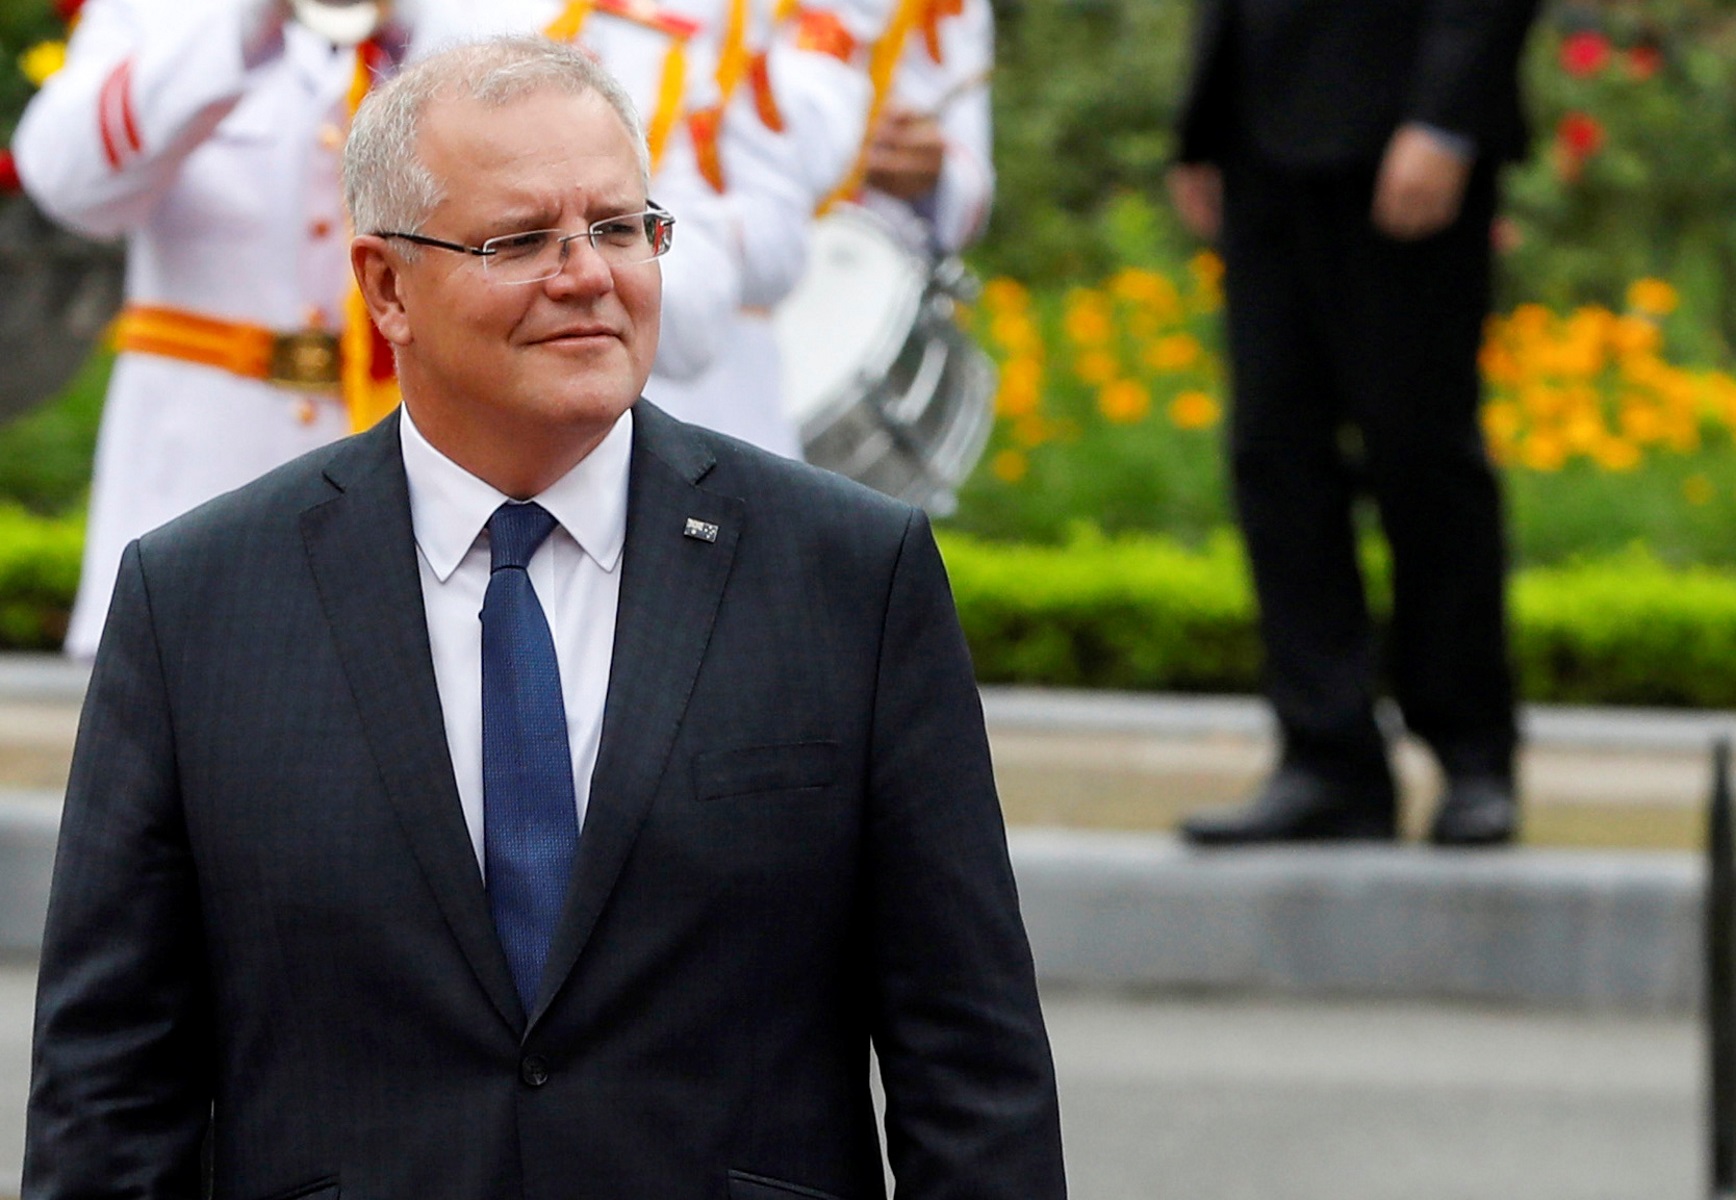 Αυστραλία: Ο πρωθυπουργός θέλει να λογοκρίνεται το εξτρεμιστικό περιεχόμενο στο internet